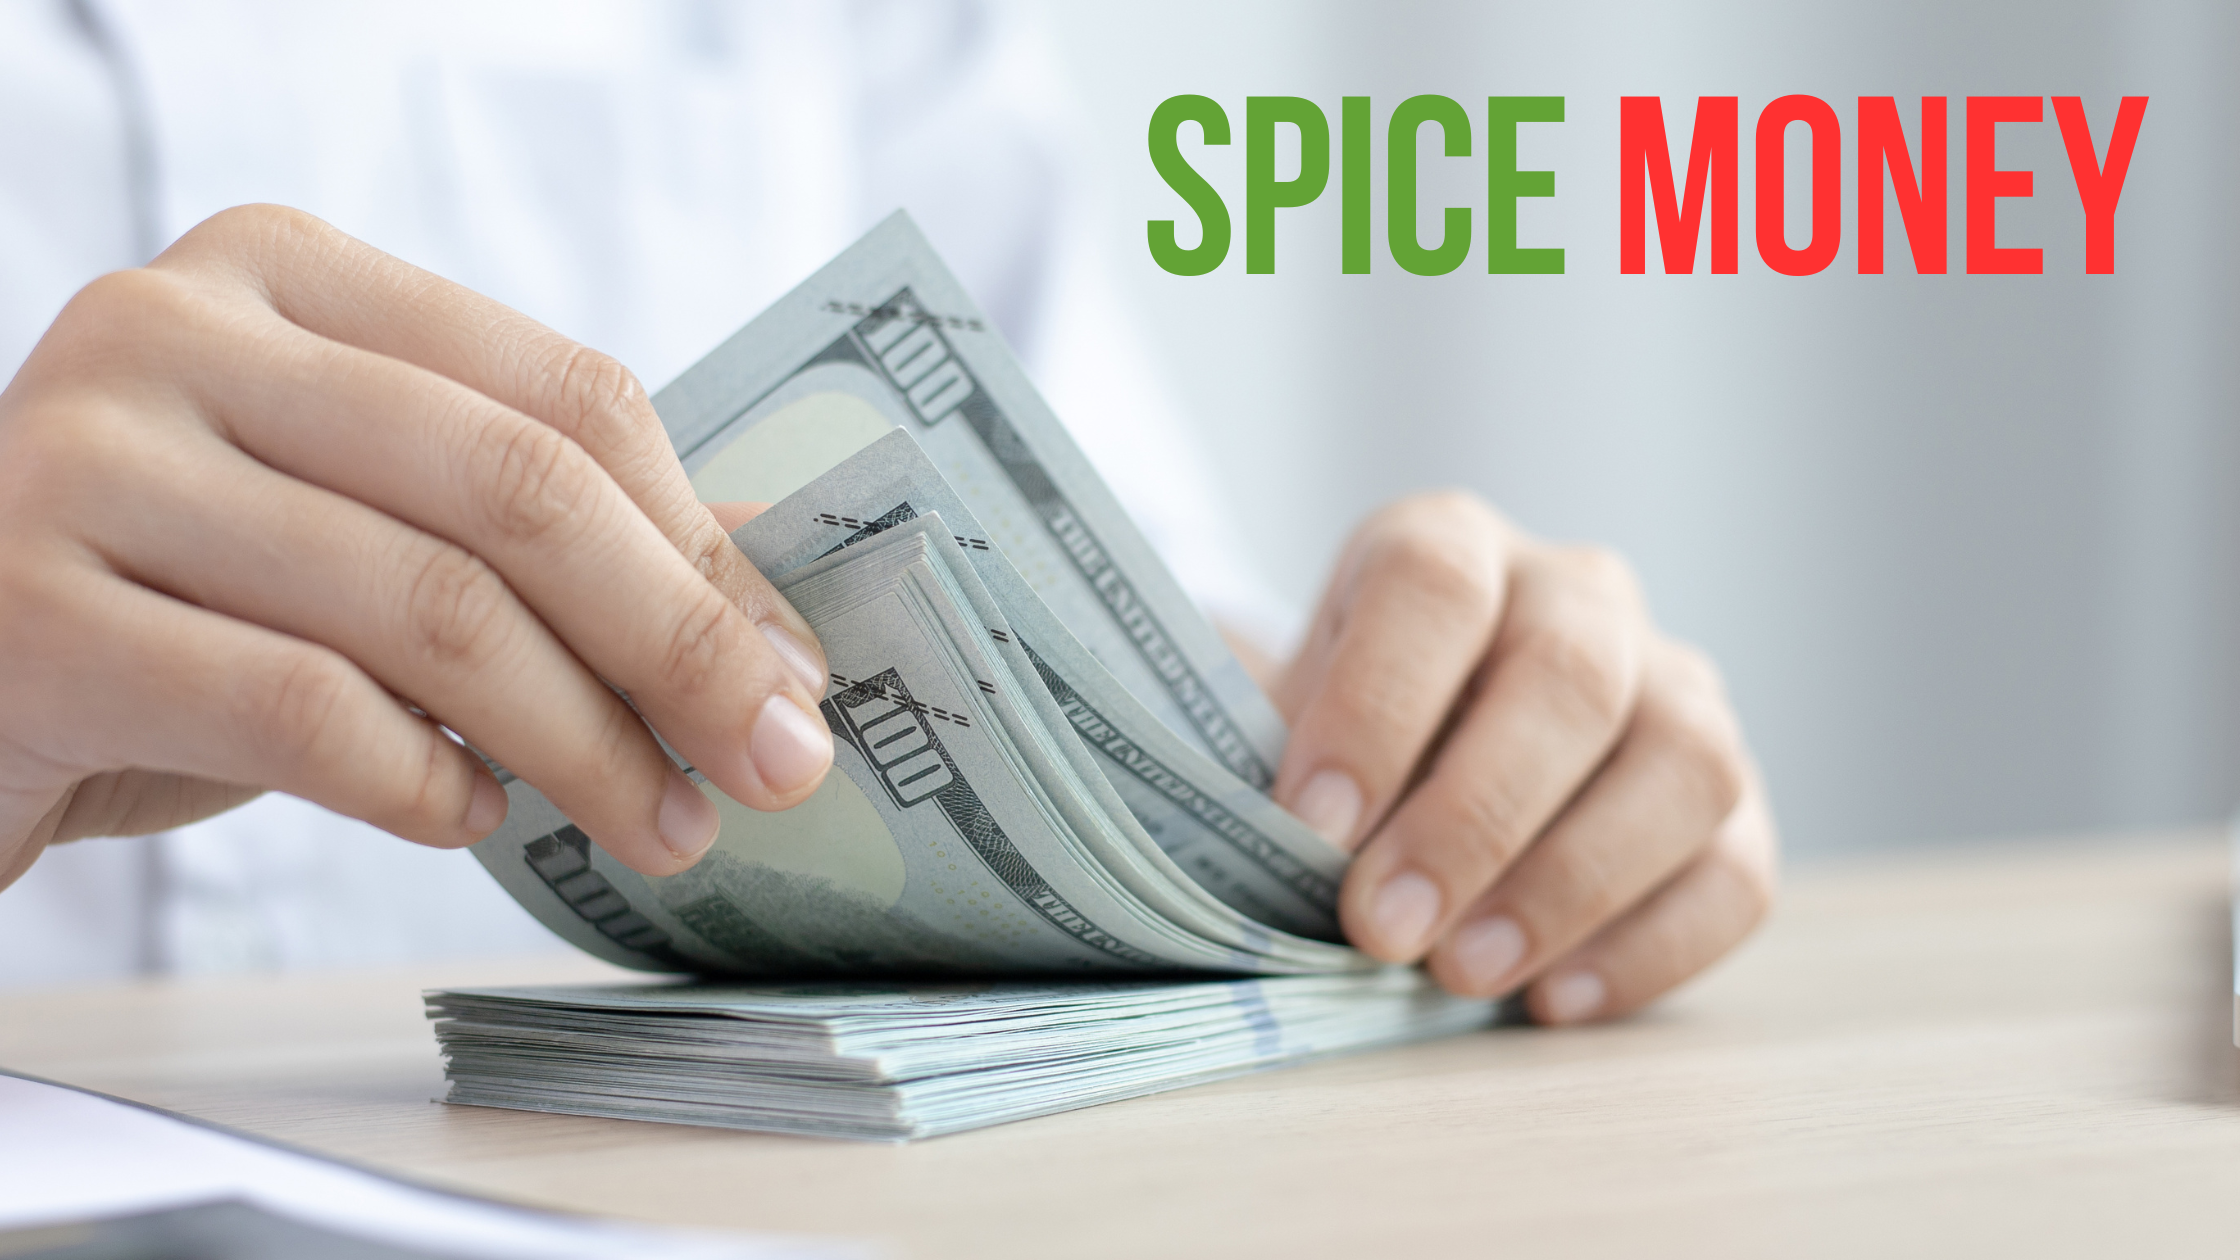 spice money